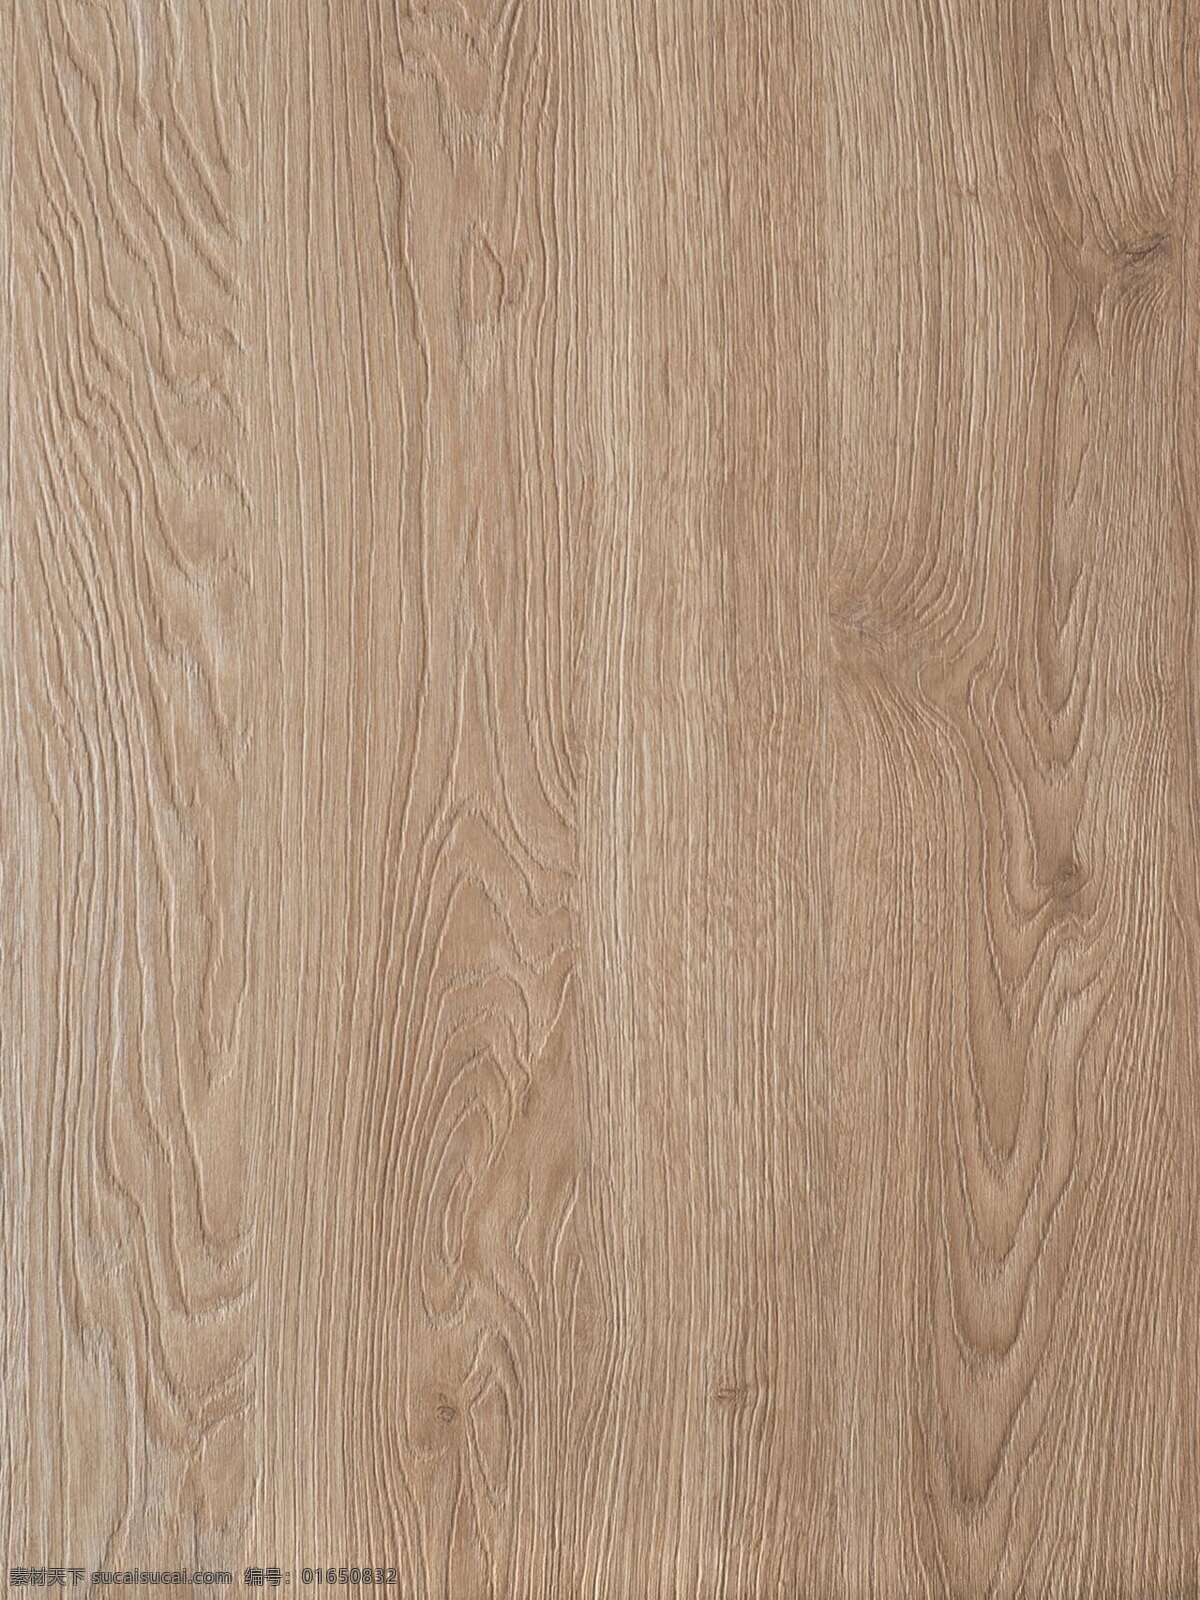 木纹图片 木纹材质 木纹纸 木纹贴图 无缝拼接 木地板贴图 环境设计 建筑设计